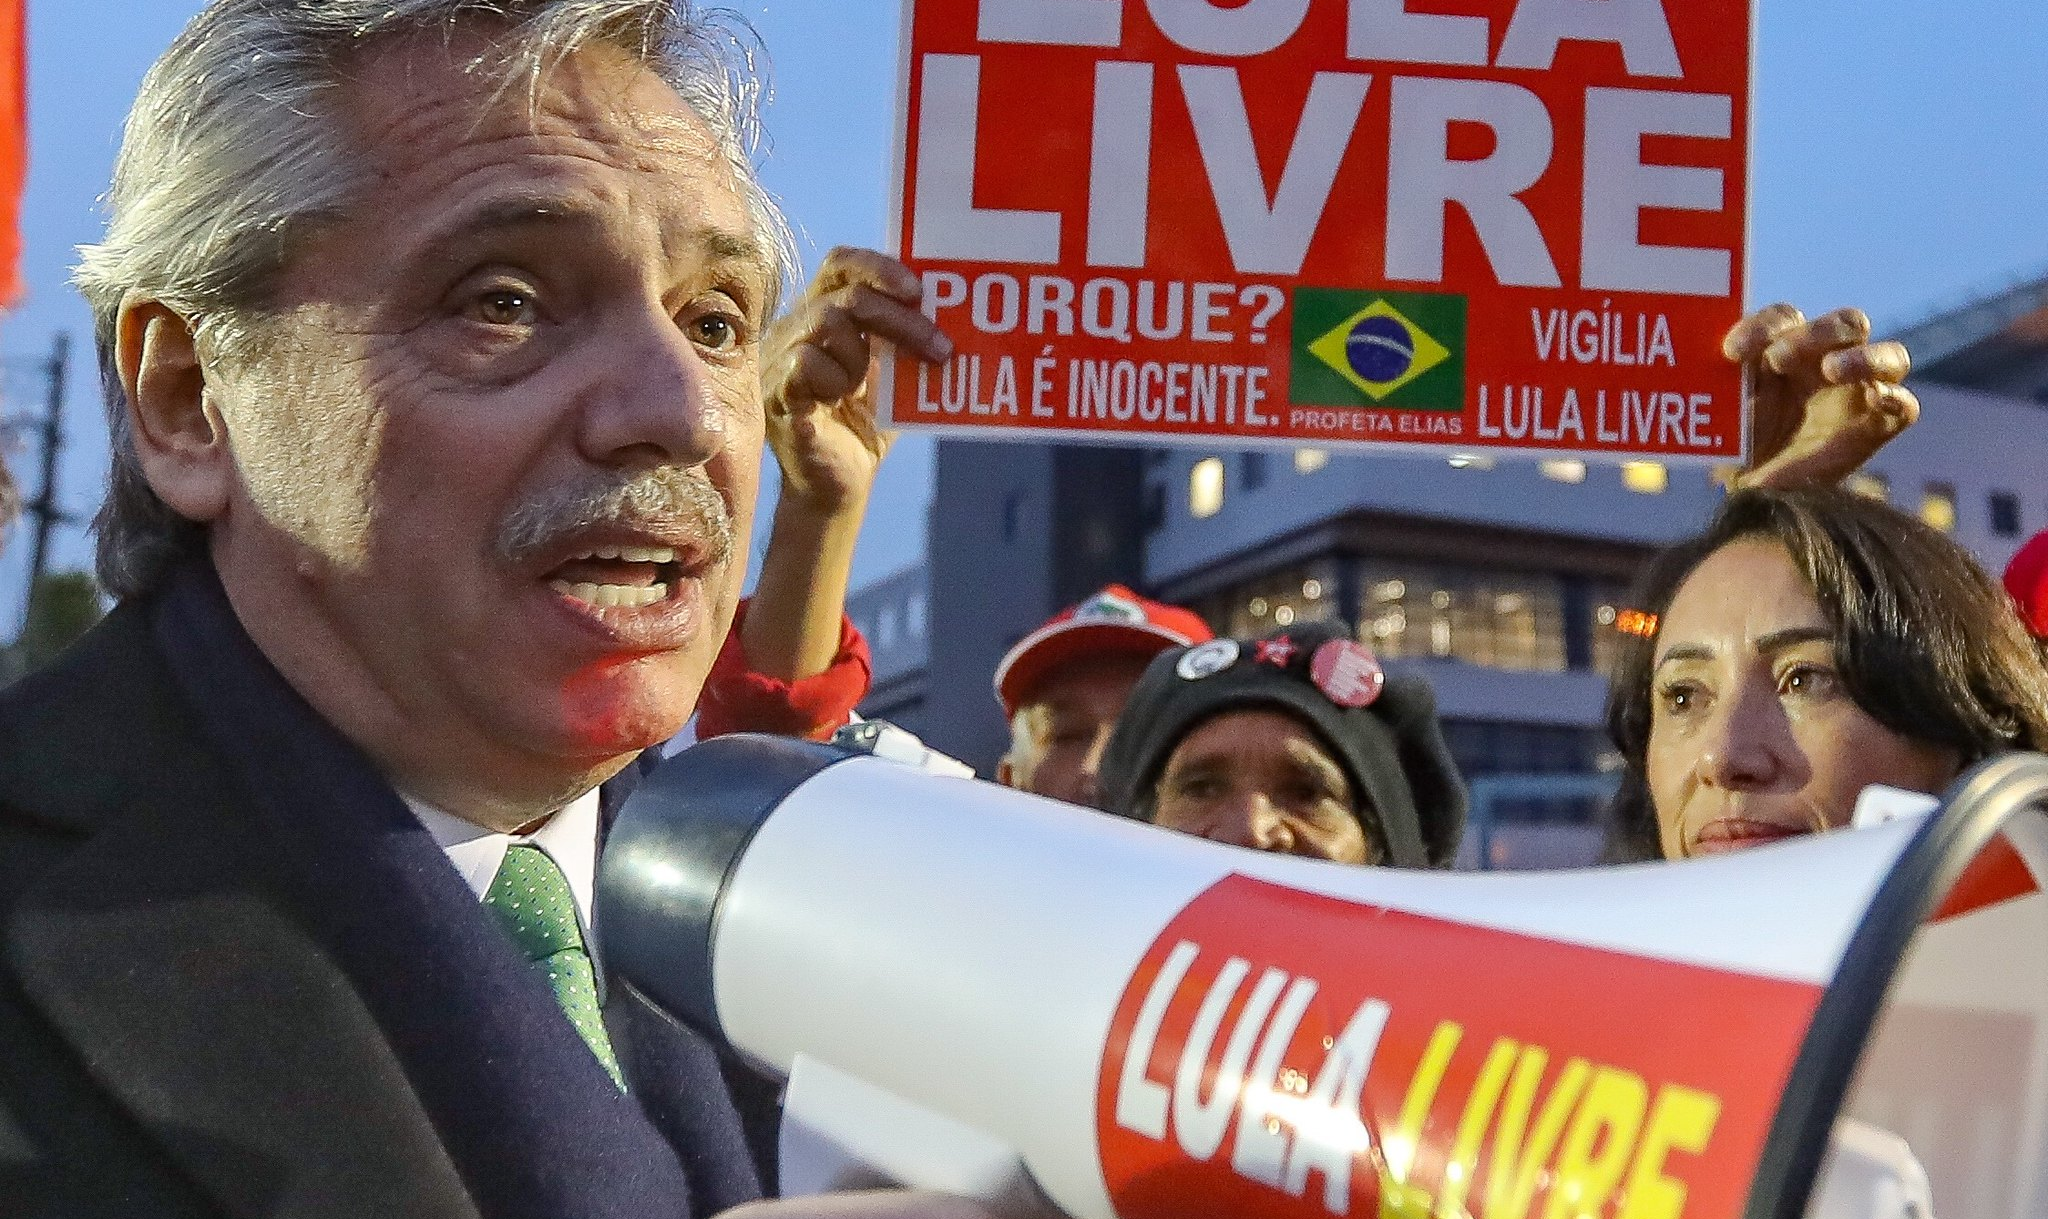 Candidatos à presidência na Argentina, Fernández e Kirchner apoiaram o abaixo-assinado '500 dias de injustiça' contra prisão de Lula